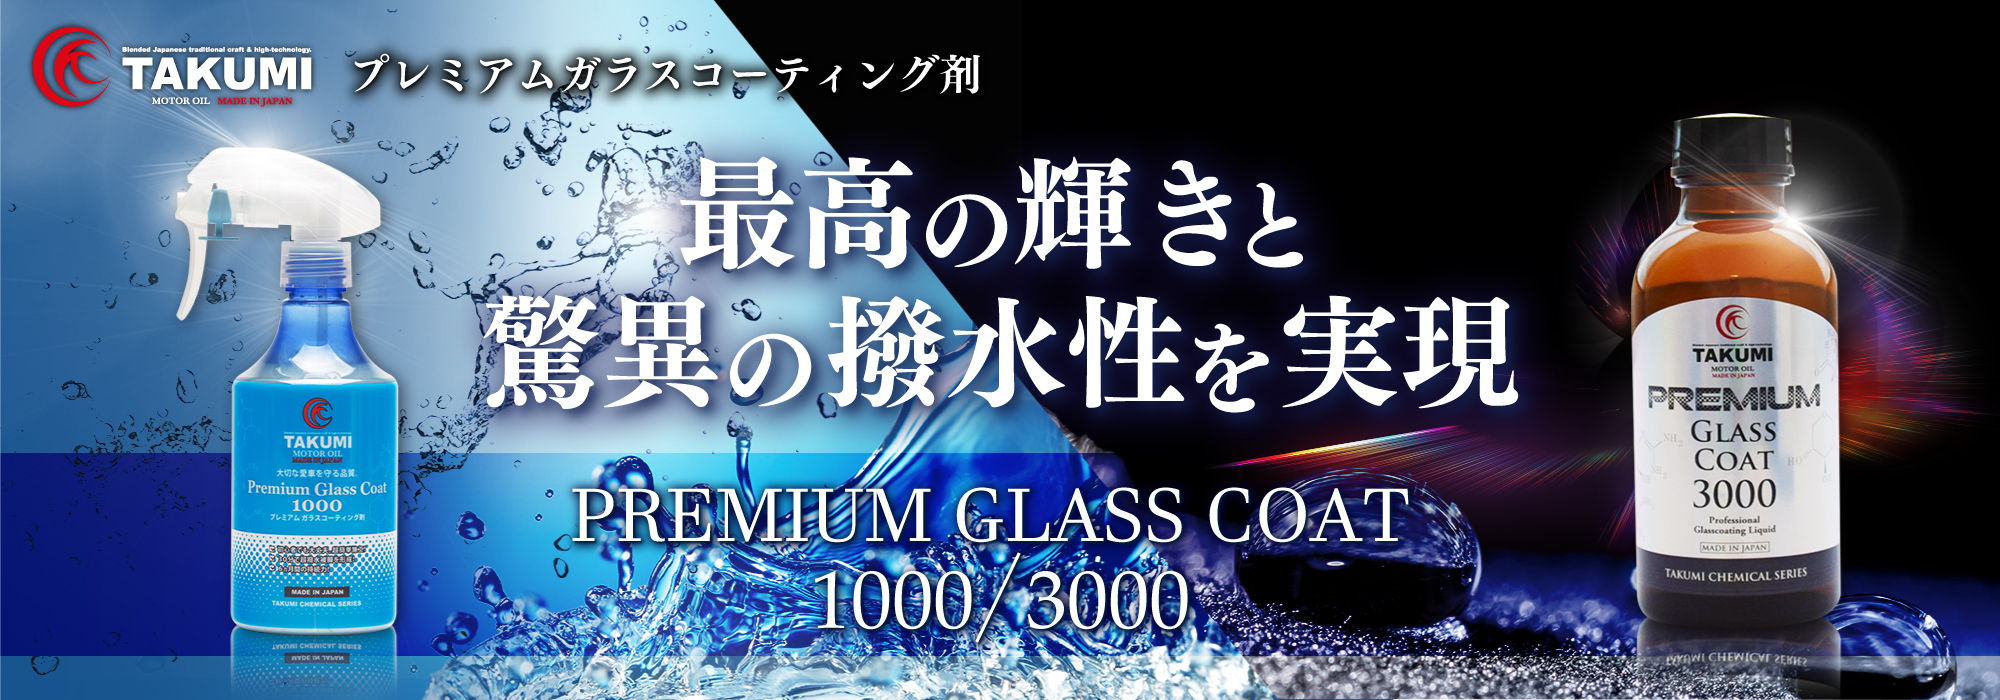 プレミアムガラスコーティング剤 最高の輝きと驚異の撥水性を実現 [PREMIUM GLASS COAT 1000/3000]